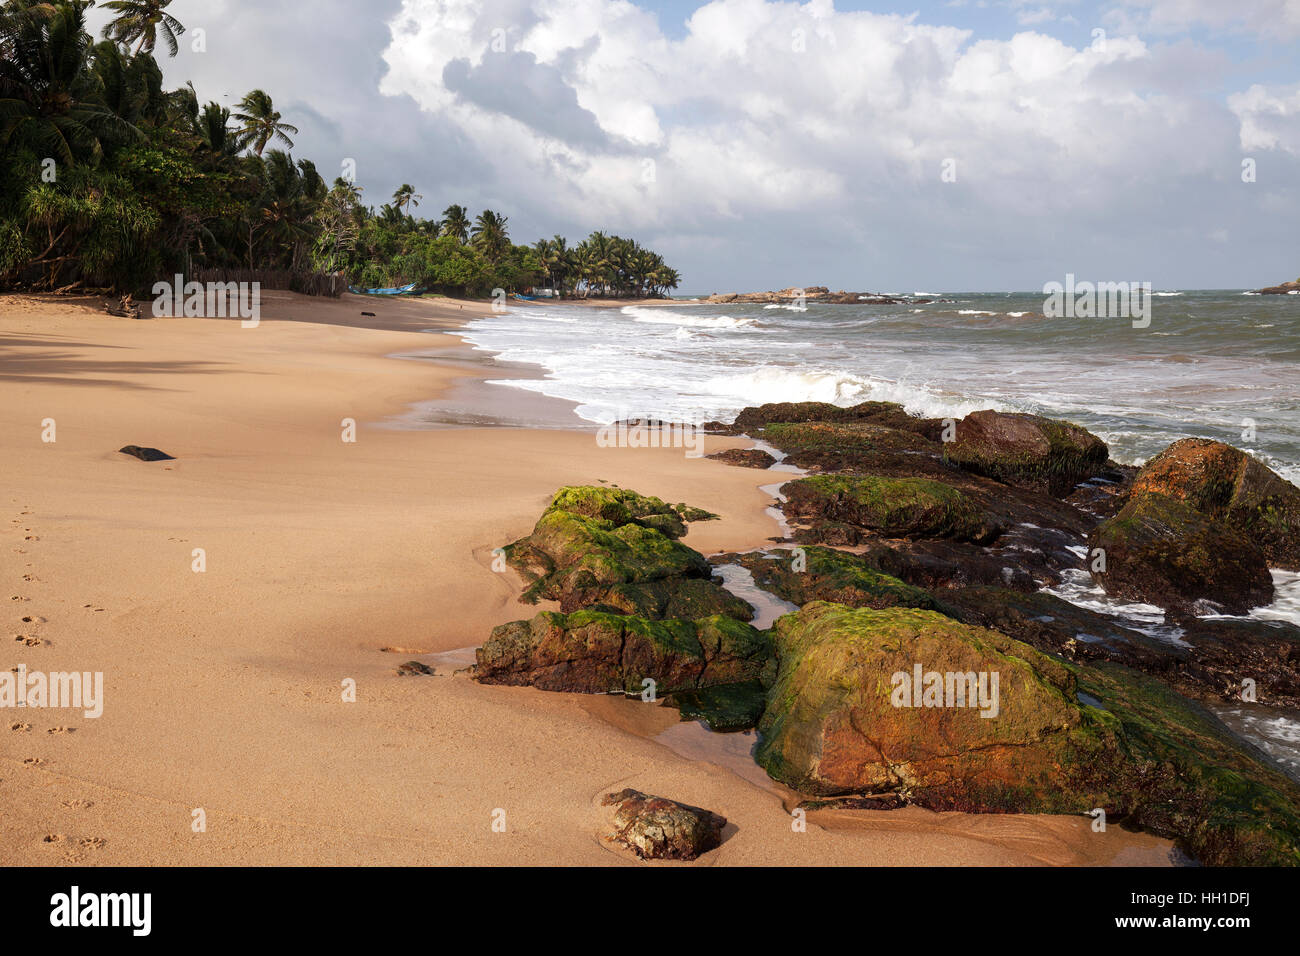 Plage de sable avec des palmiers et des rochers, Beruwela, Sri Lanka, Province de l'Ouest Banque D'Images